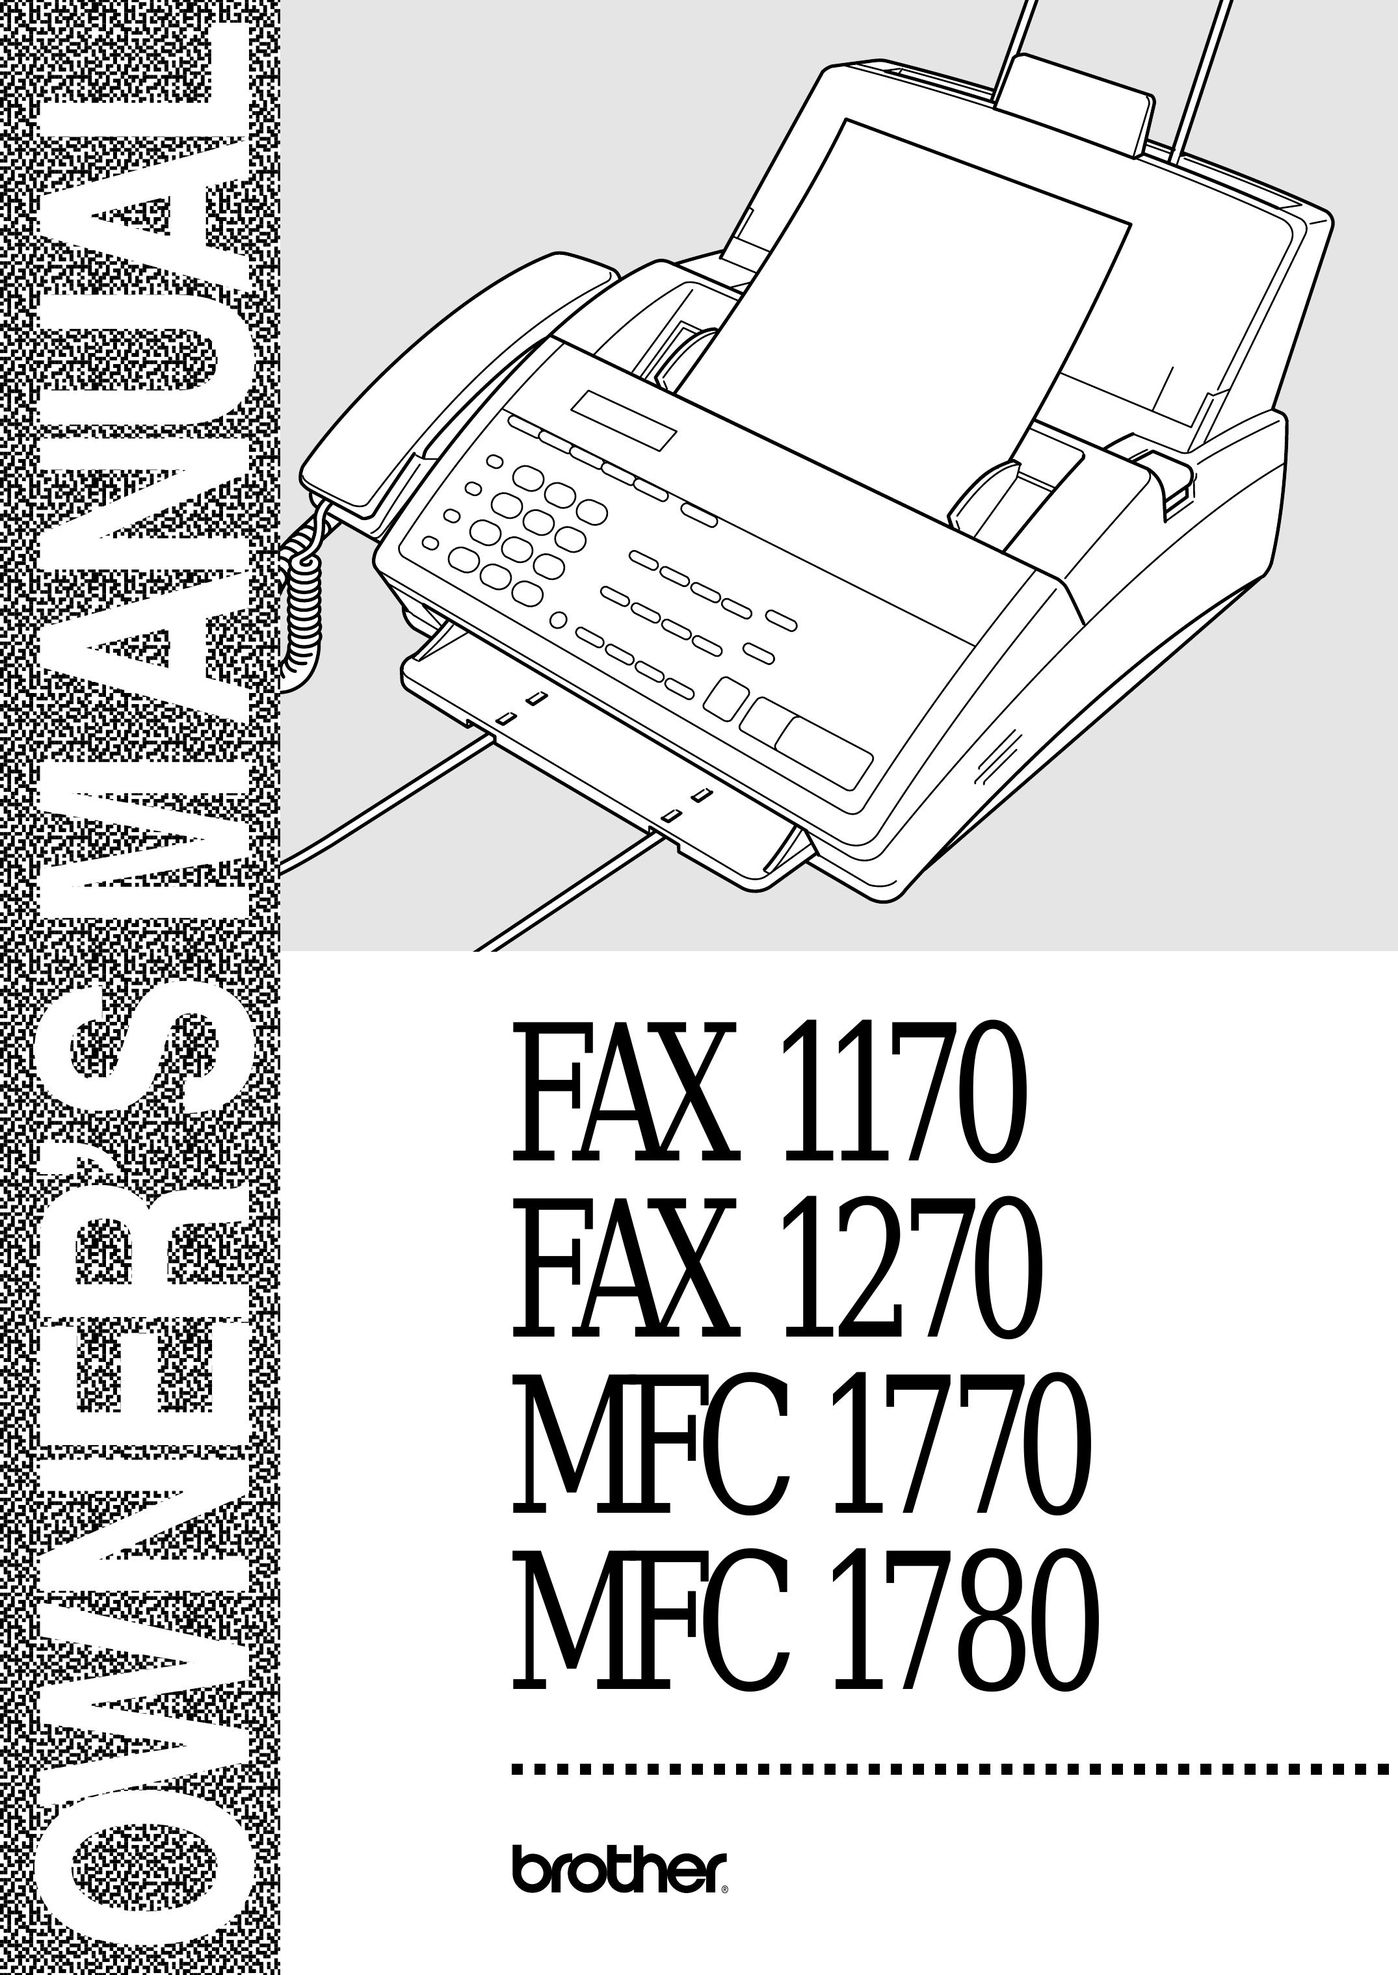 Visioneer 1770 Fax Machine User Manual